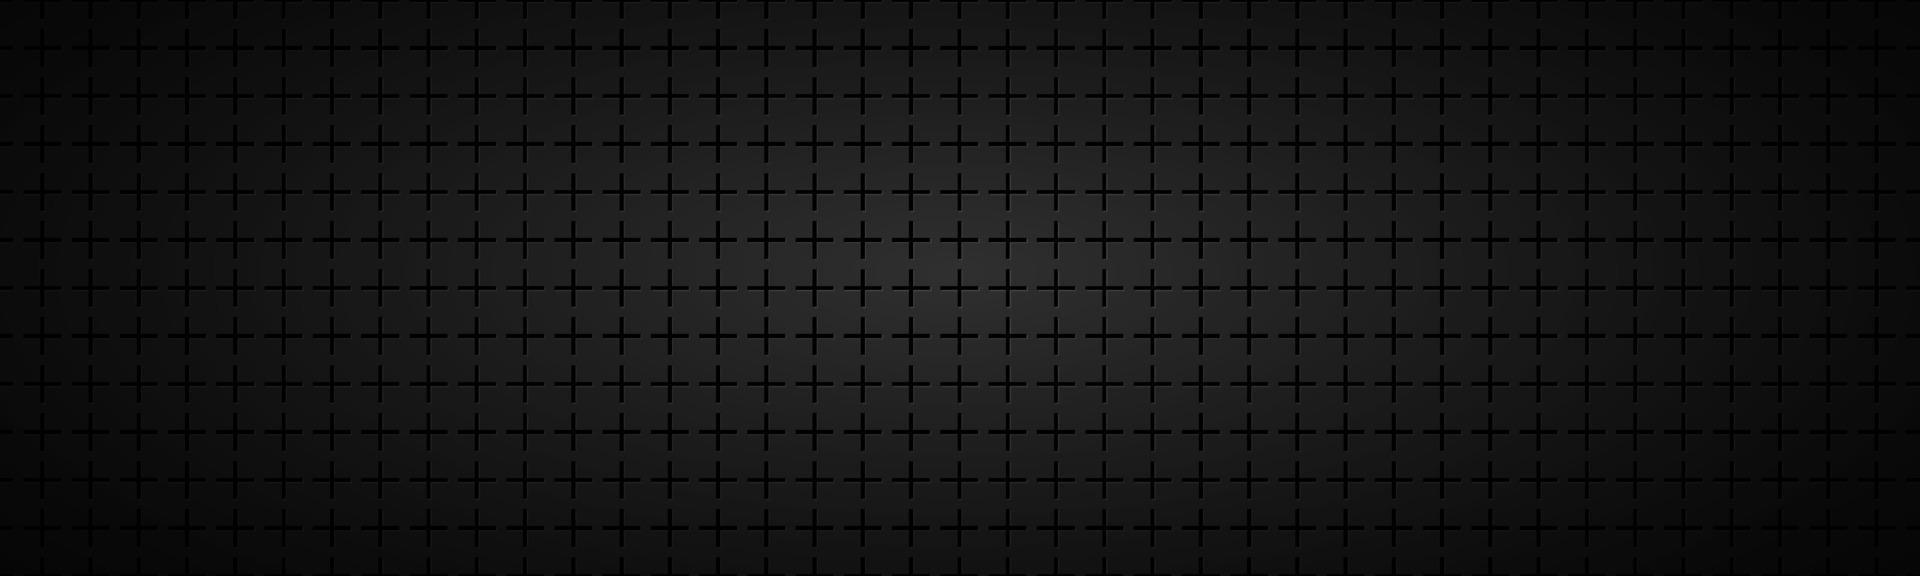 zwarte abstracte kop. vector metalen patroon. eenvoudig mozaïekbanner met gelijkmatig gestapelde kruisen